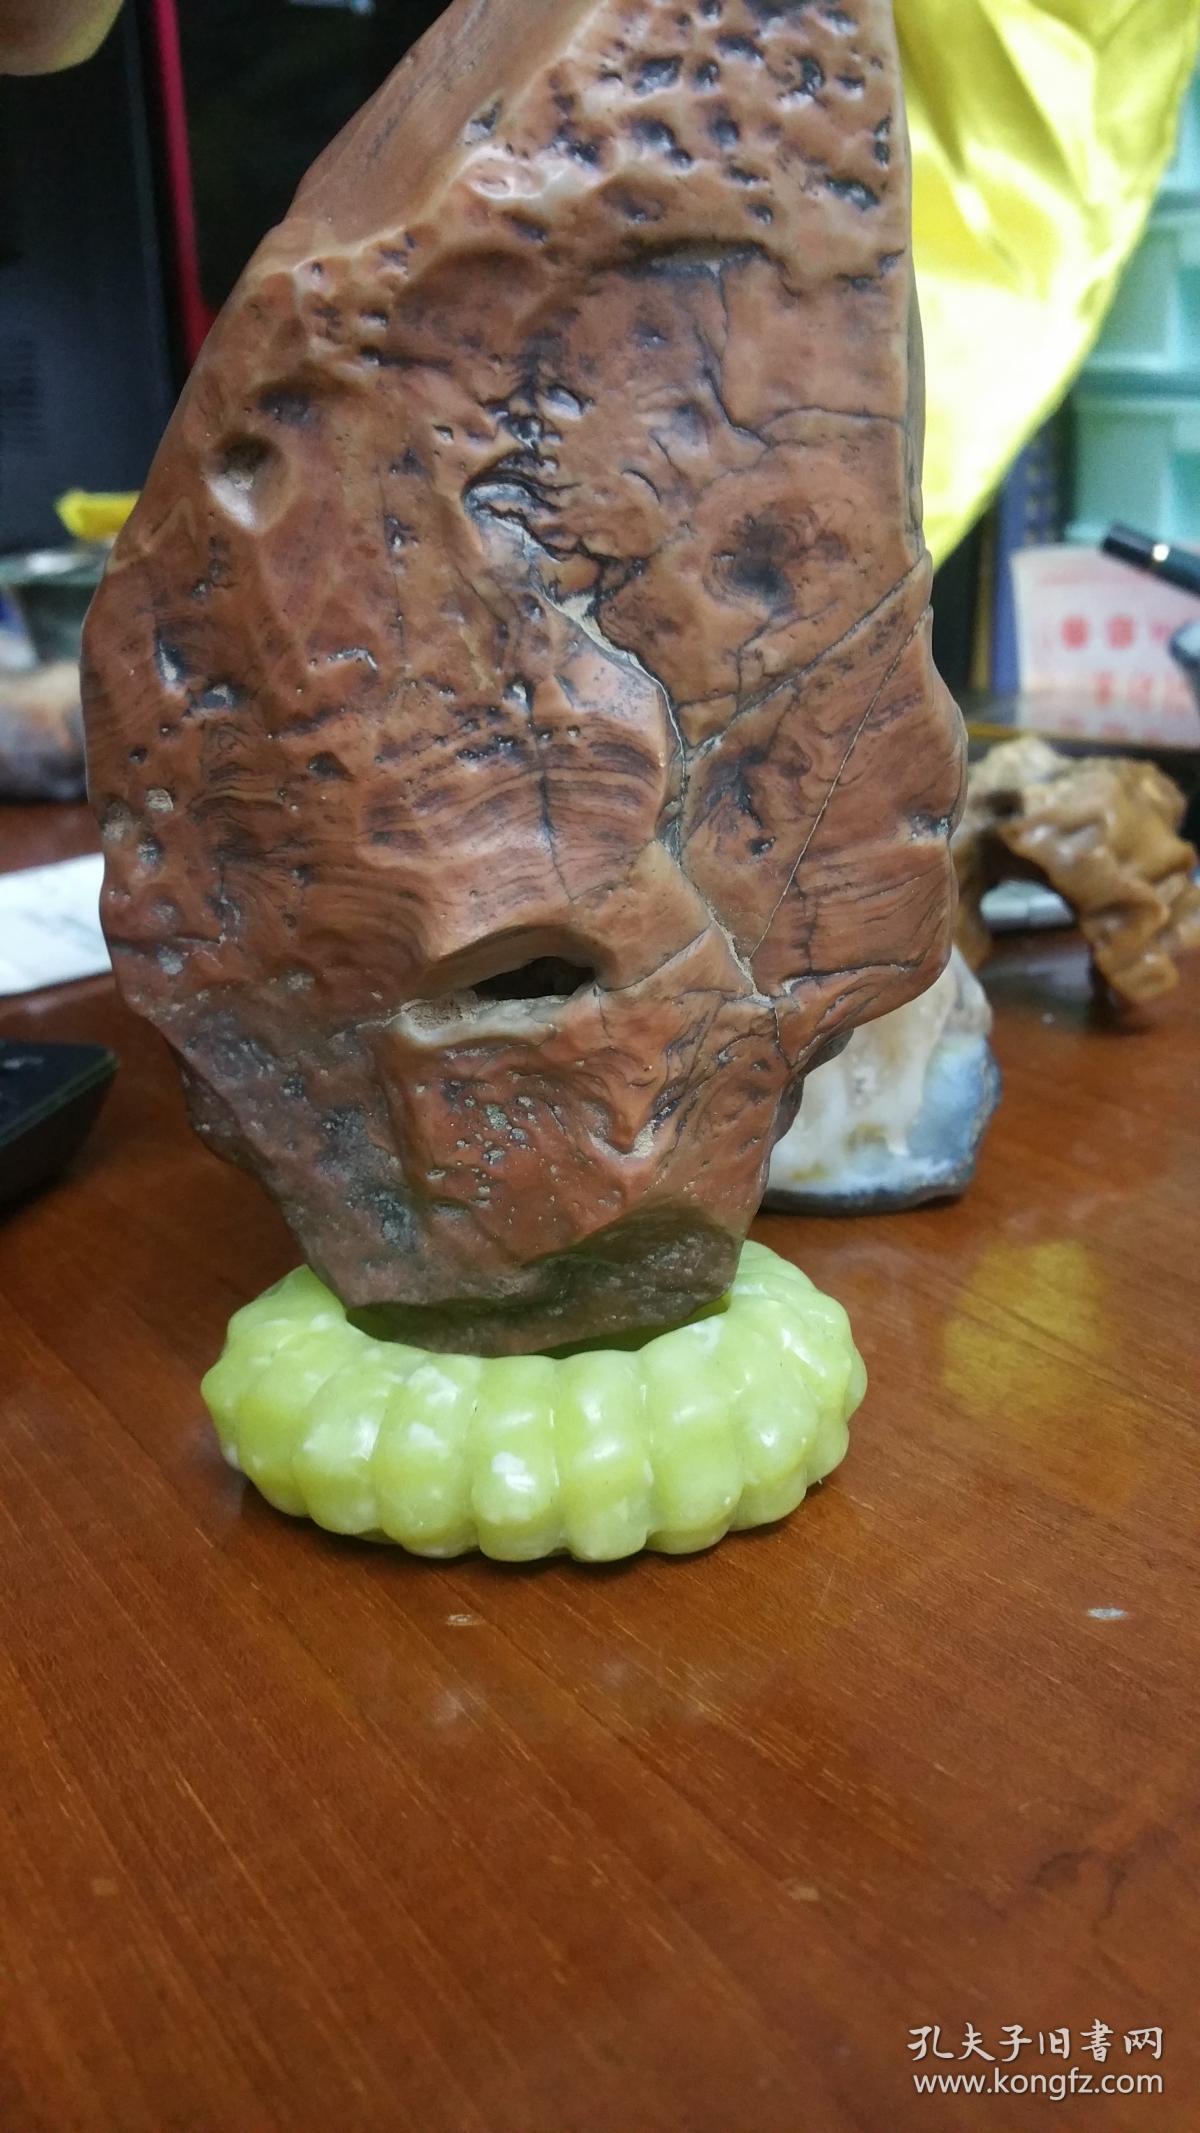 天然戈壁石人物形象